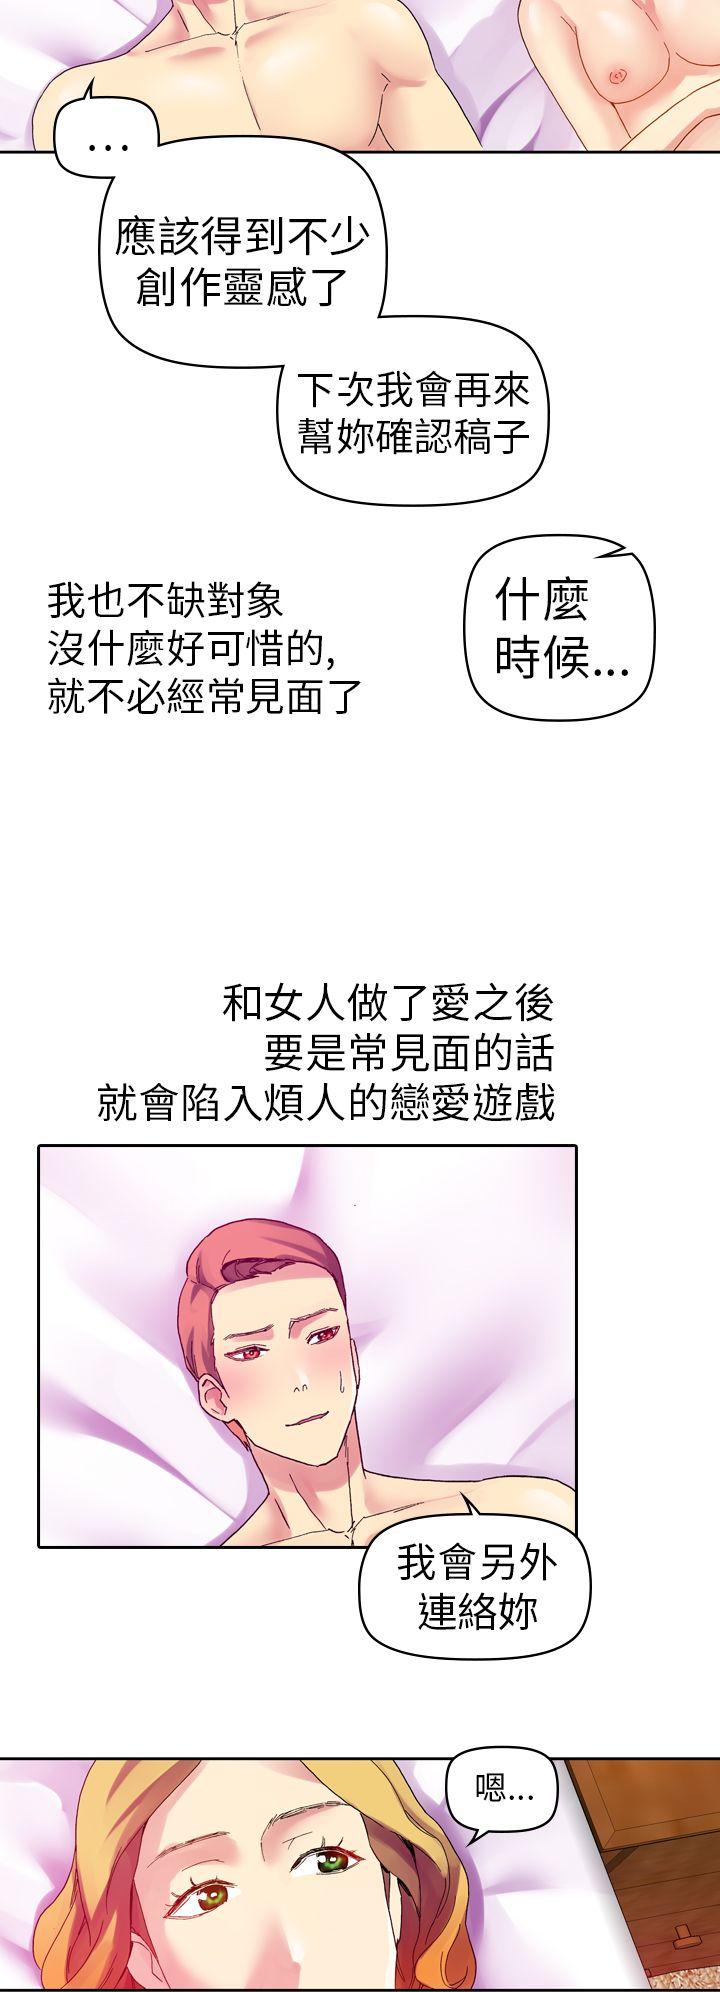 韩国污漫画 幻想中的她(完結) 第11话 20